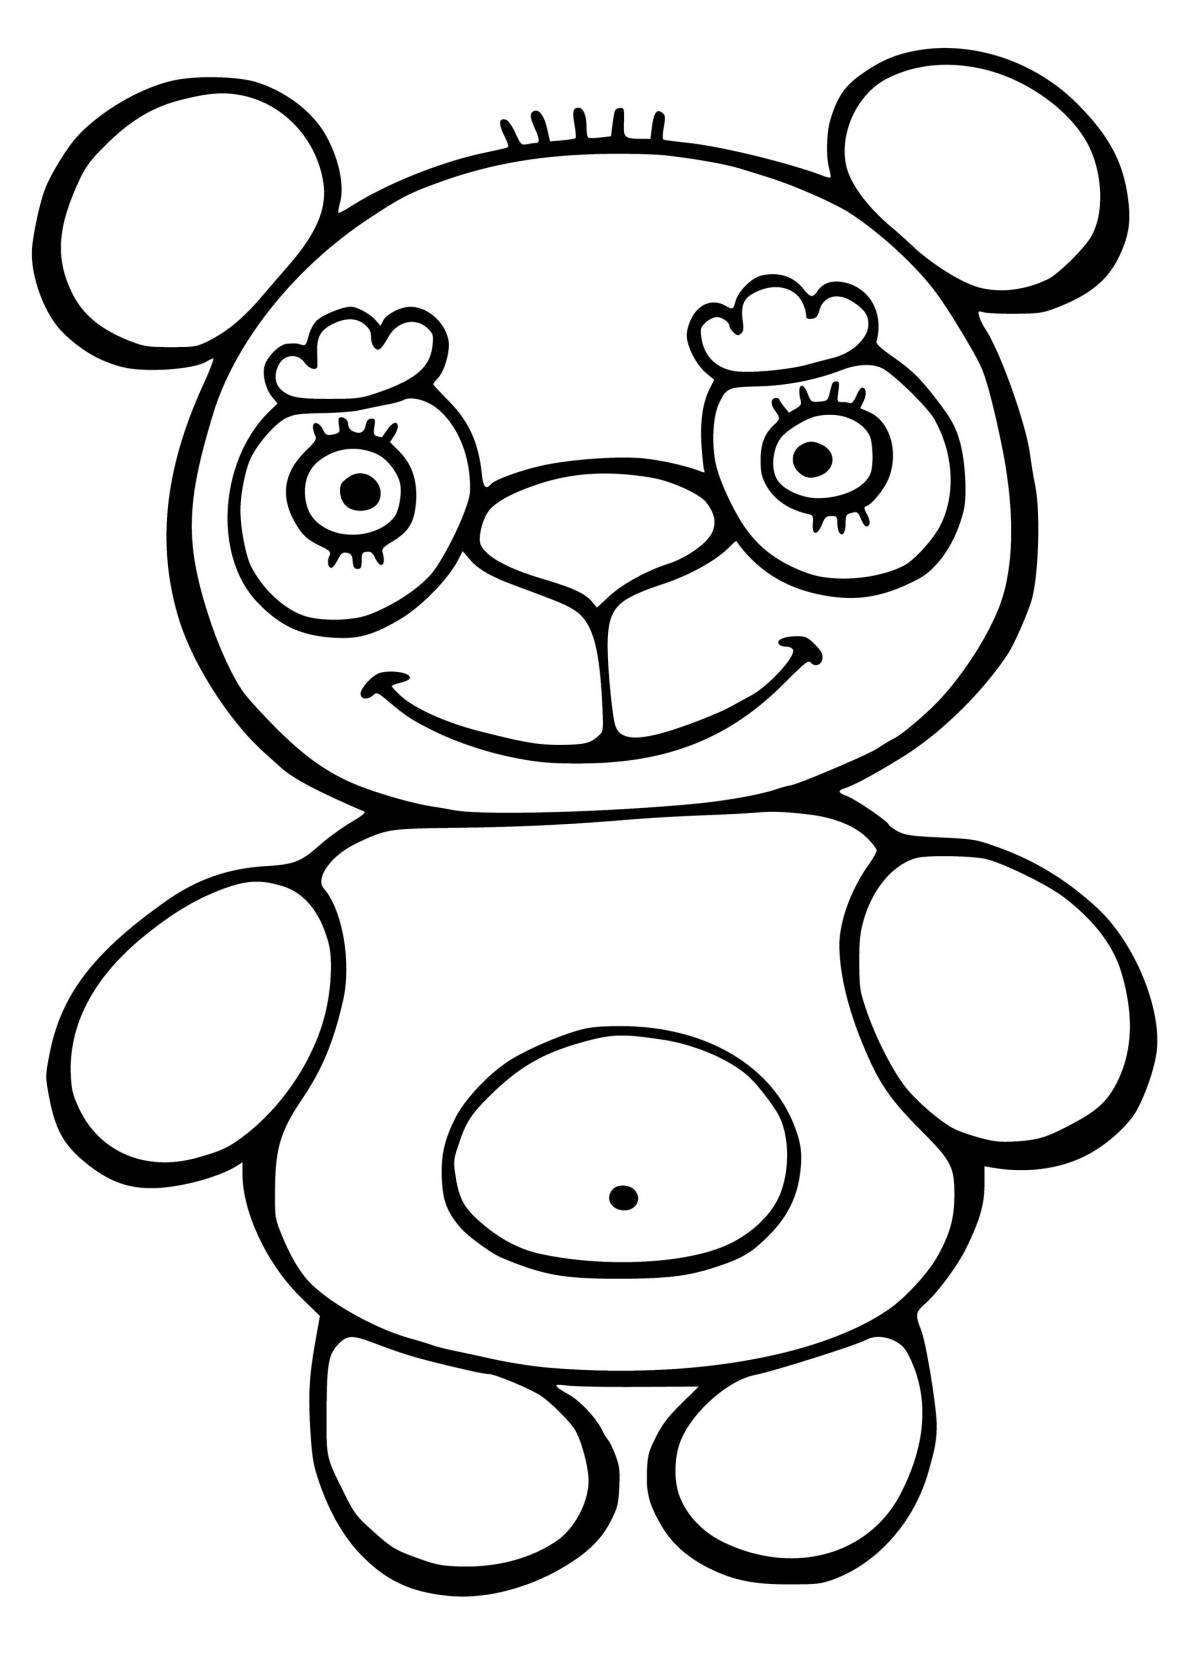 Раскраска очаровательный медвежонок для детей 2-3 лет